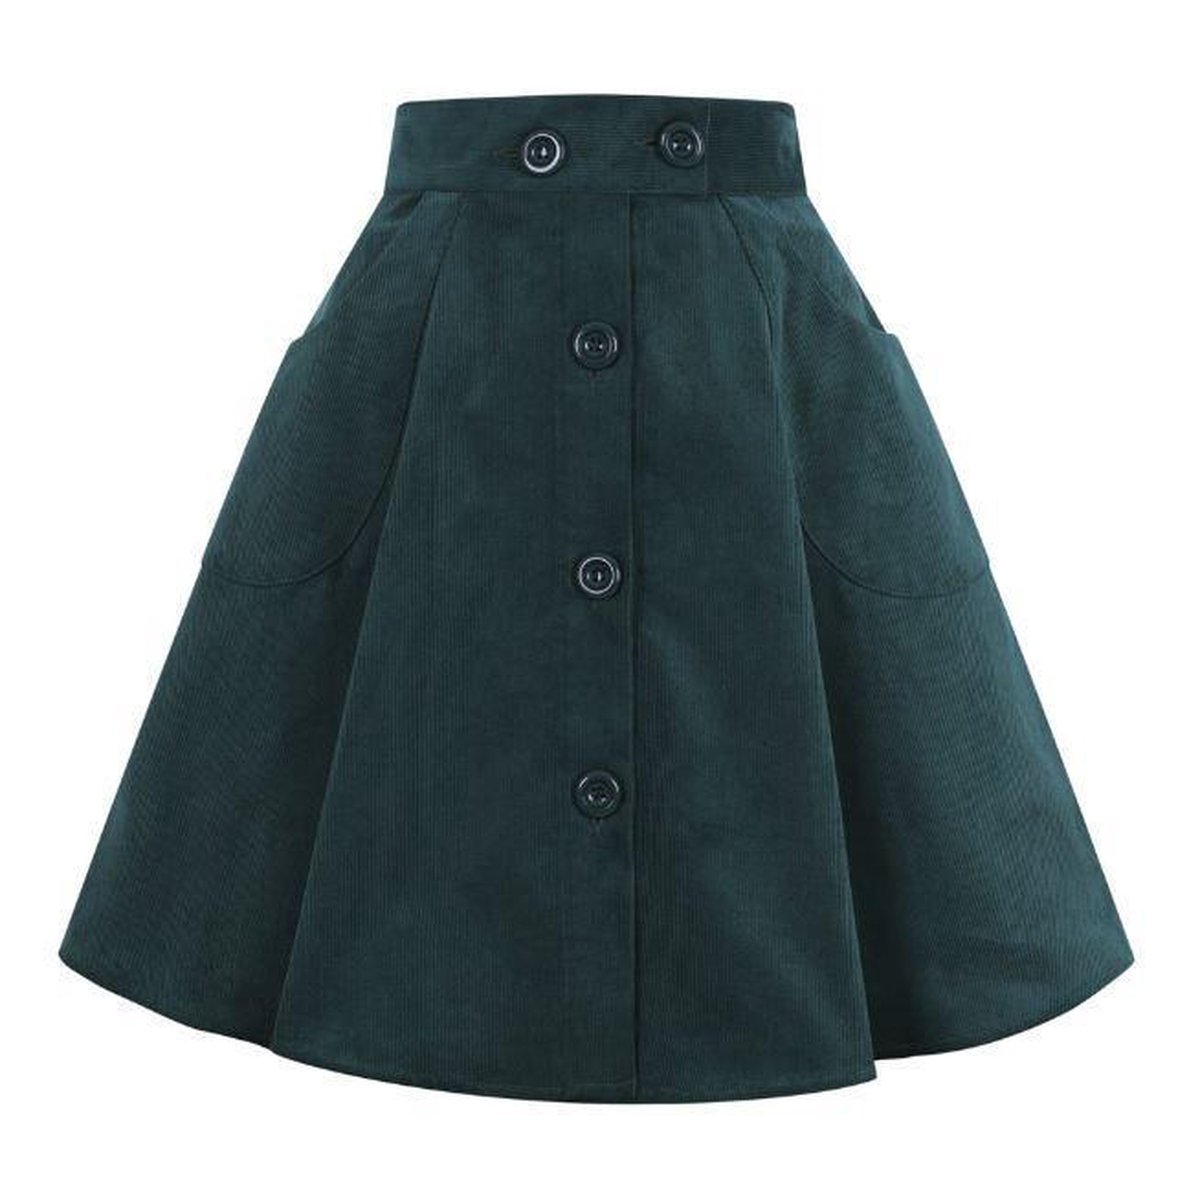 Fina Skirt Green in Swing Vintage Jaren 50 Stijl